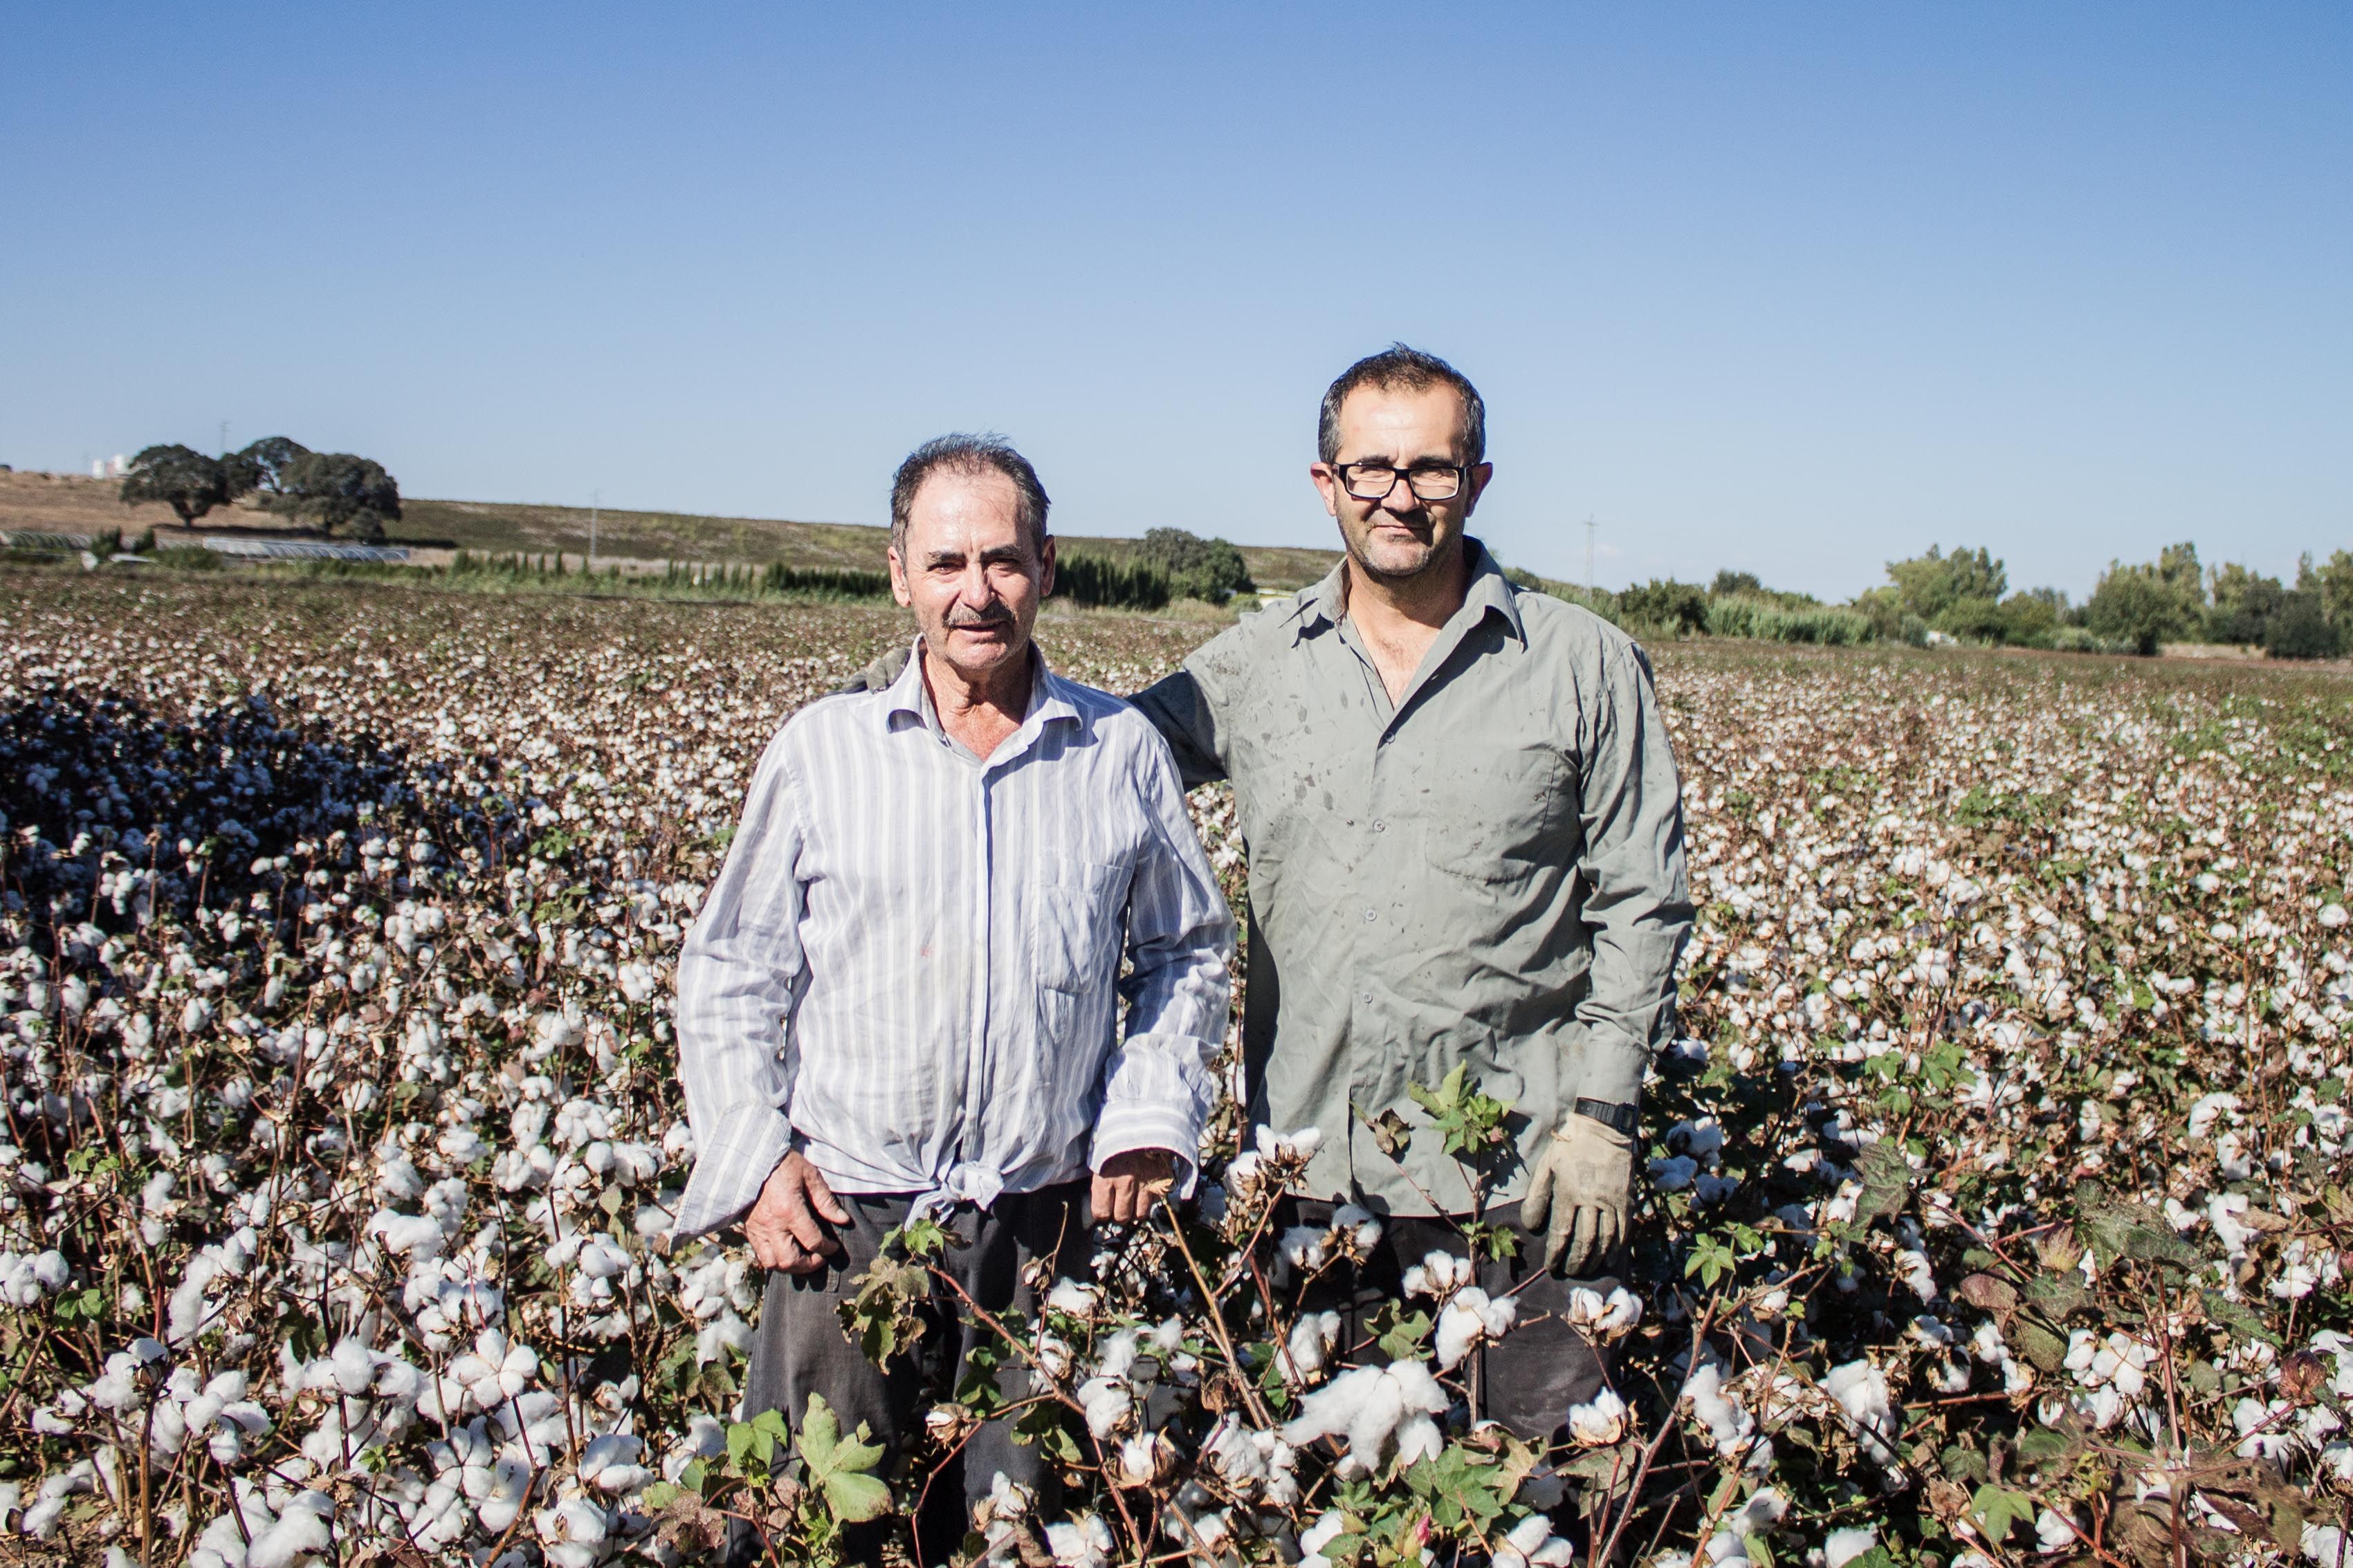 Los compañeros Esteban y Pepe posan entre las plantas de algodón.